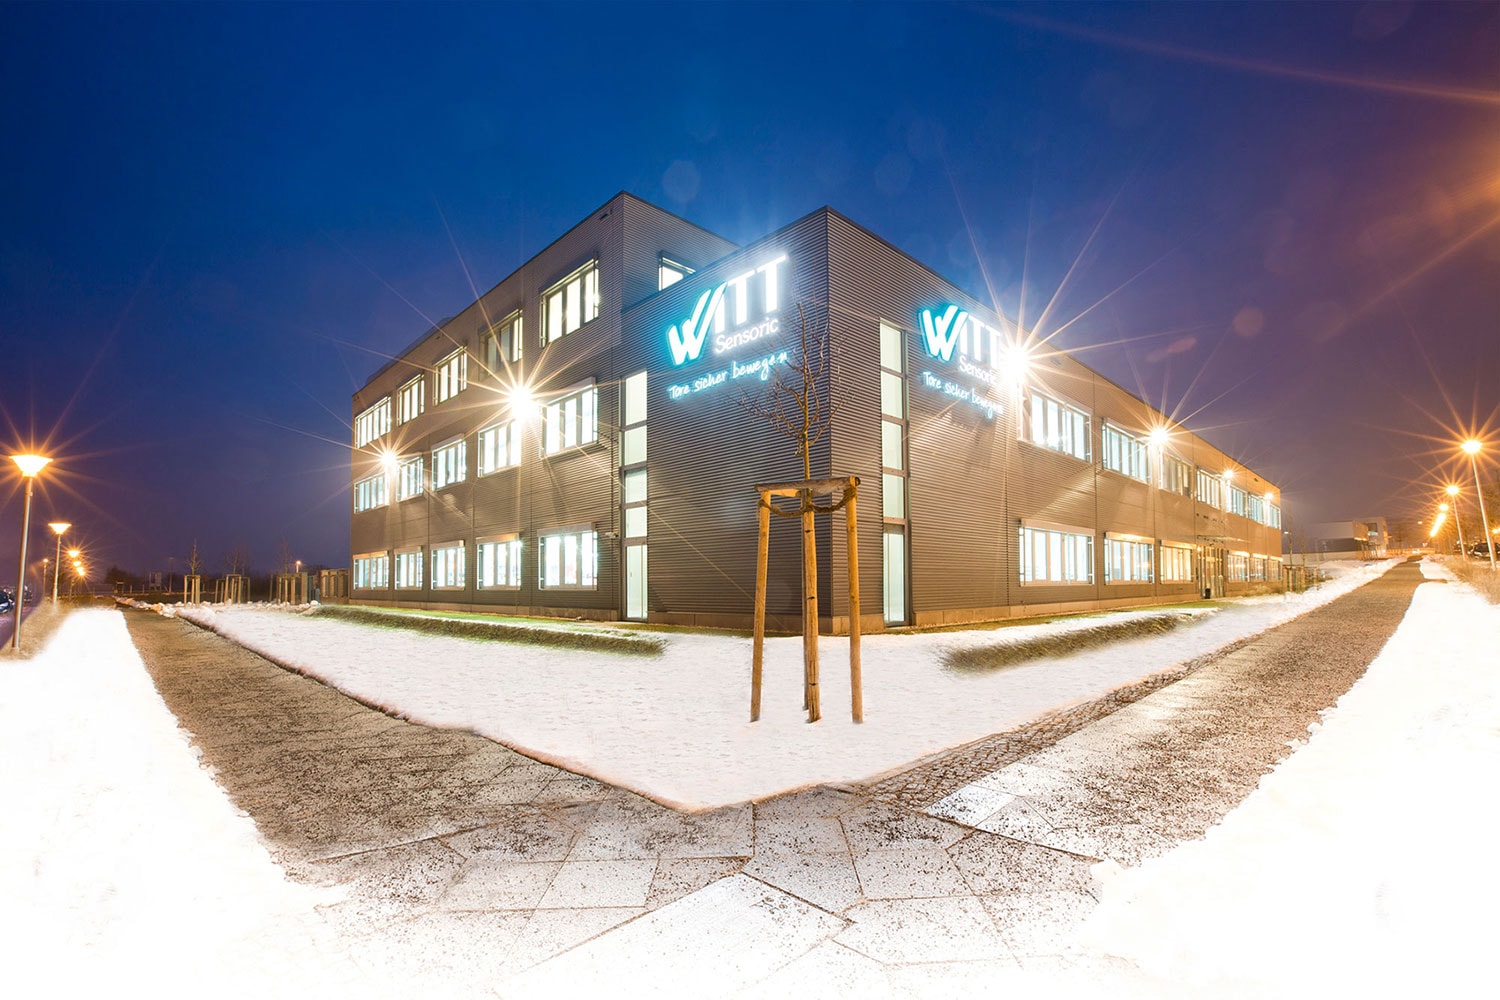 Witt Sensoric Firmengebäude